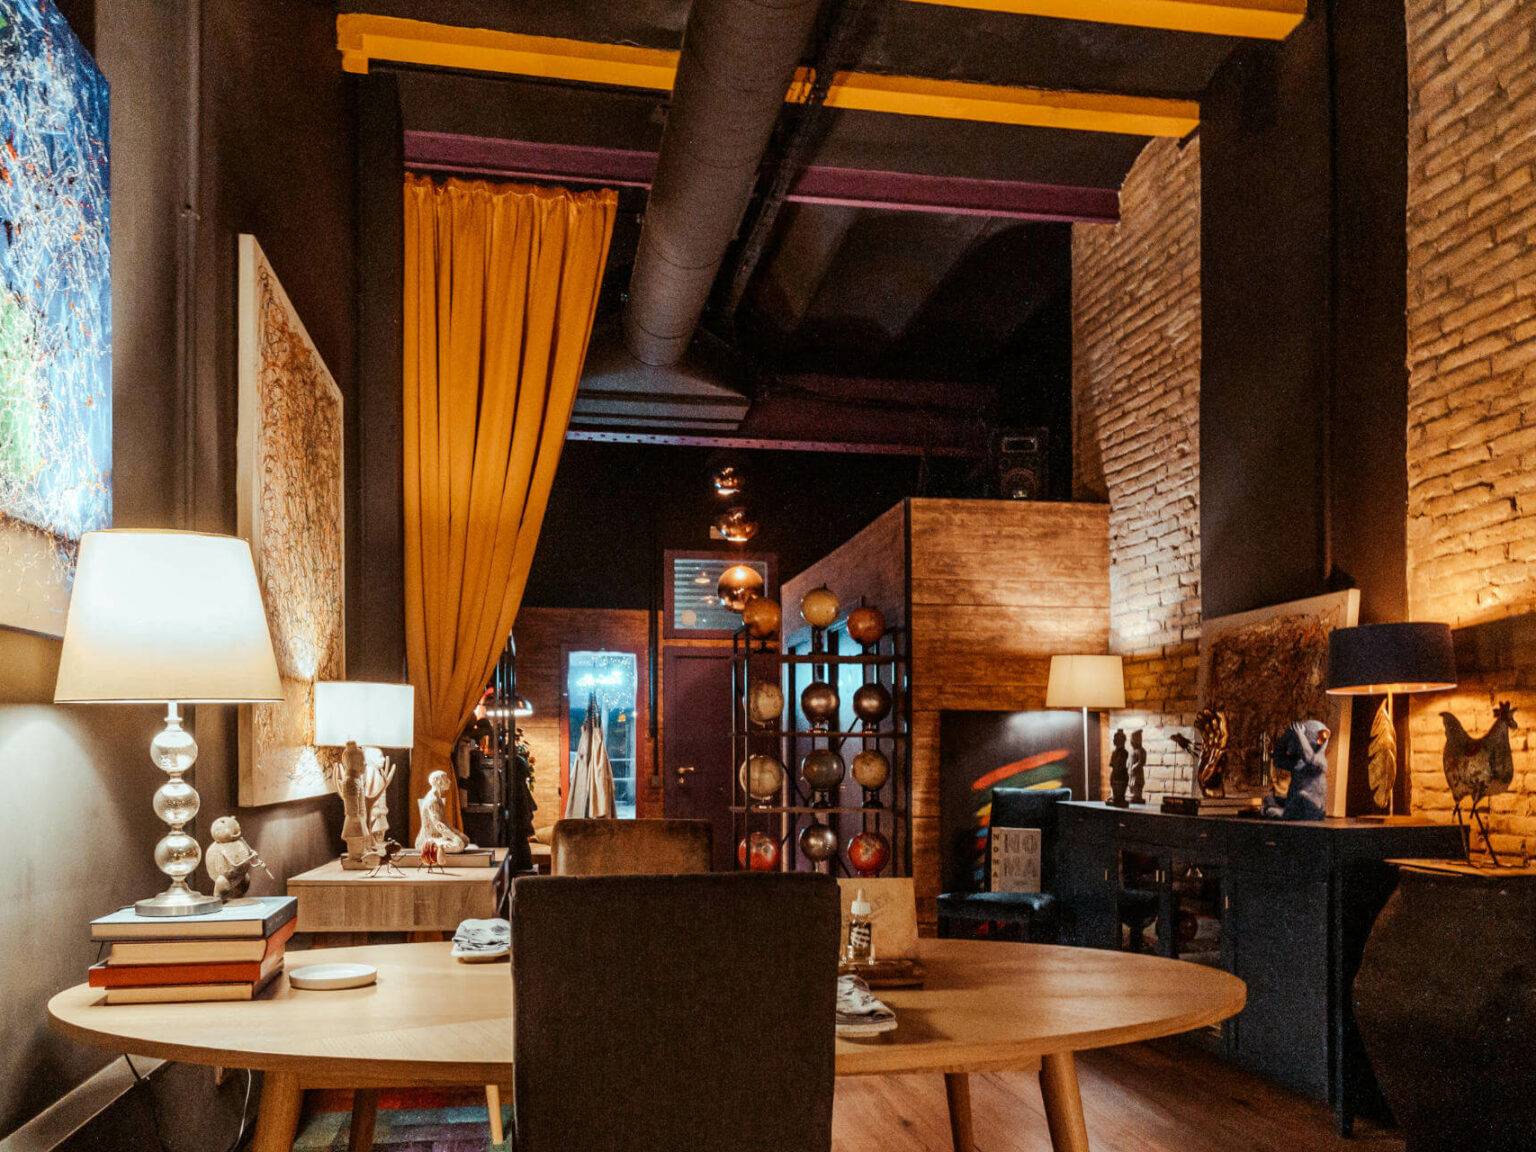 Das Tast Ller in Barcelona sieht nicht nach klassischem Restaurant aus, sondern geicht eher einem großen, stylisch eingerichteten Loft mit offener Küche.